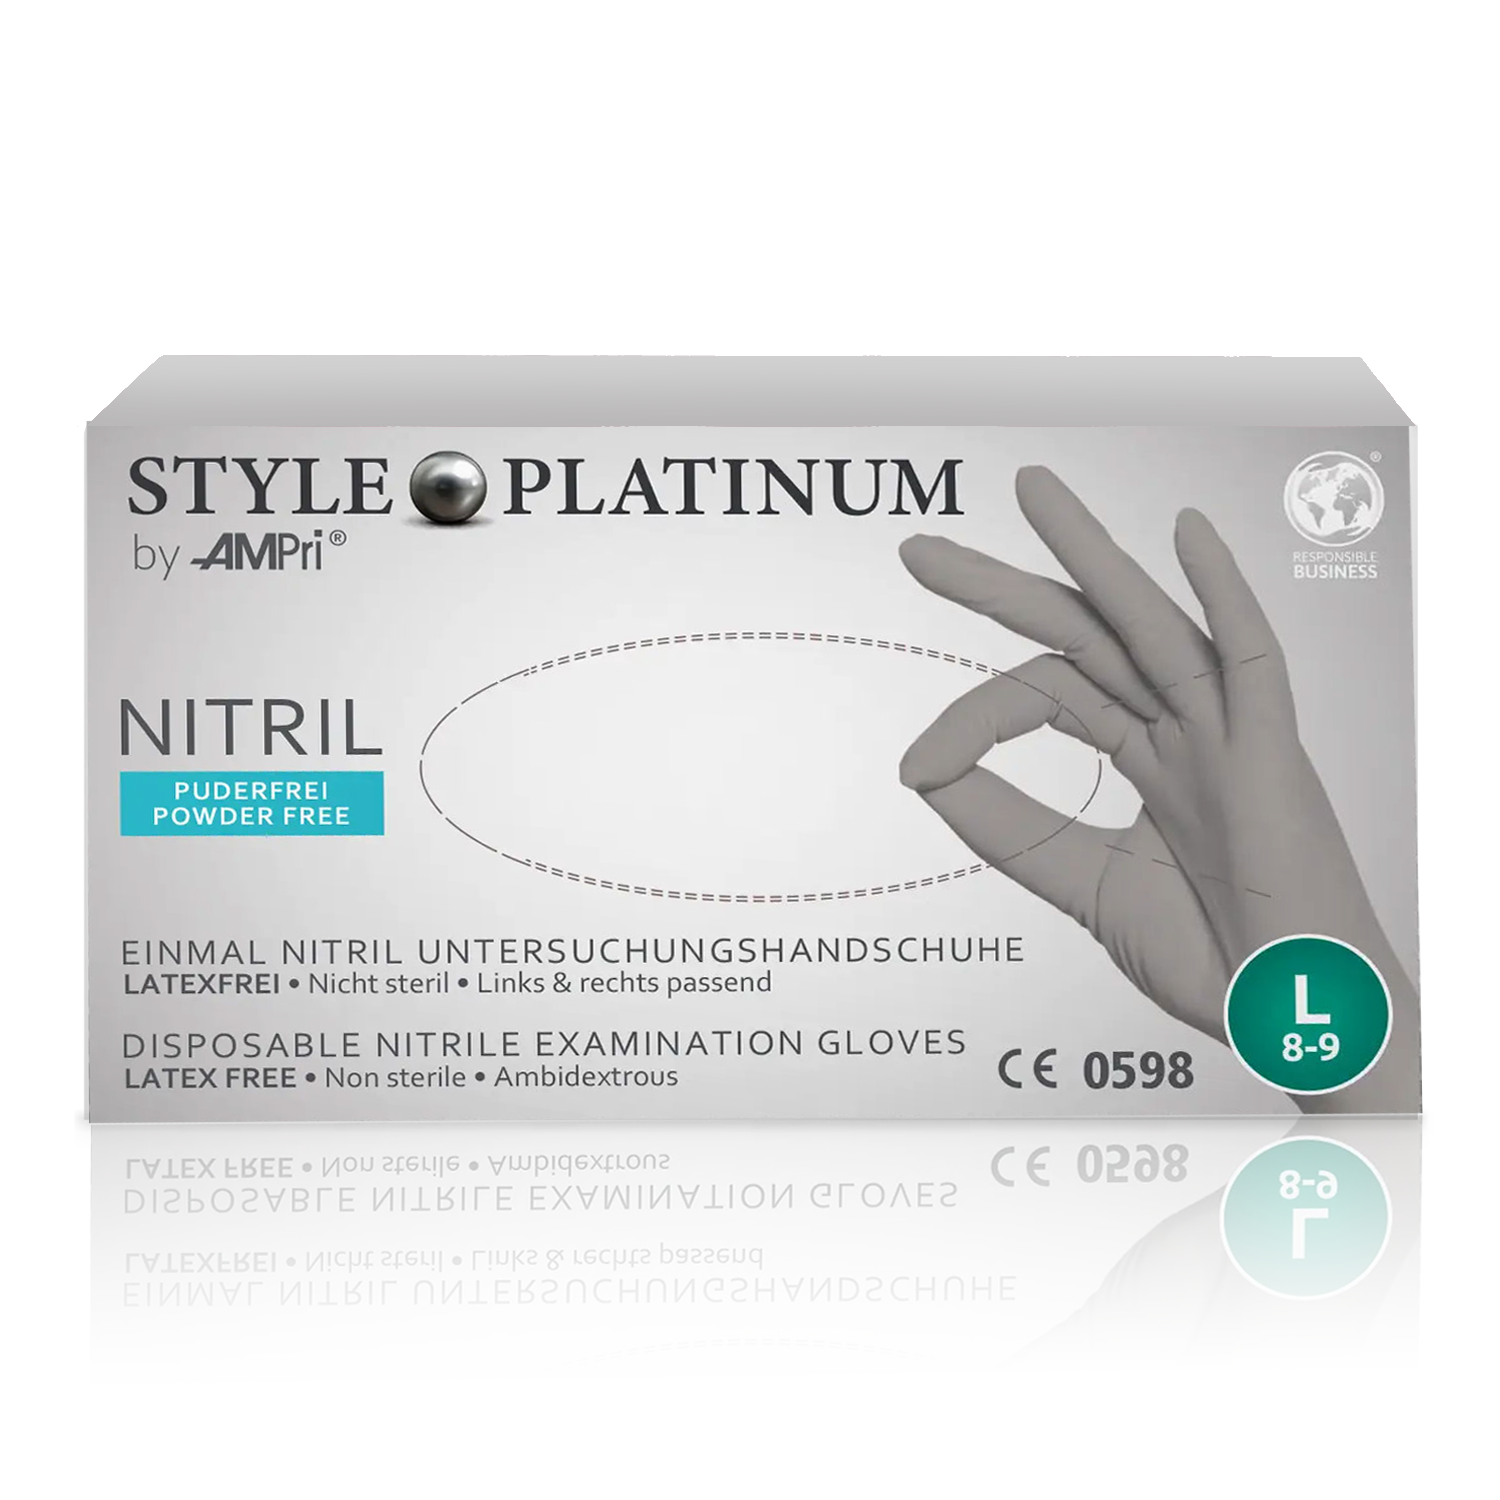 Nitril Style Platinum silbergrau Einmalhandschuh latex- und puderfrei